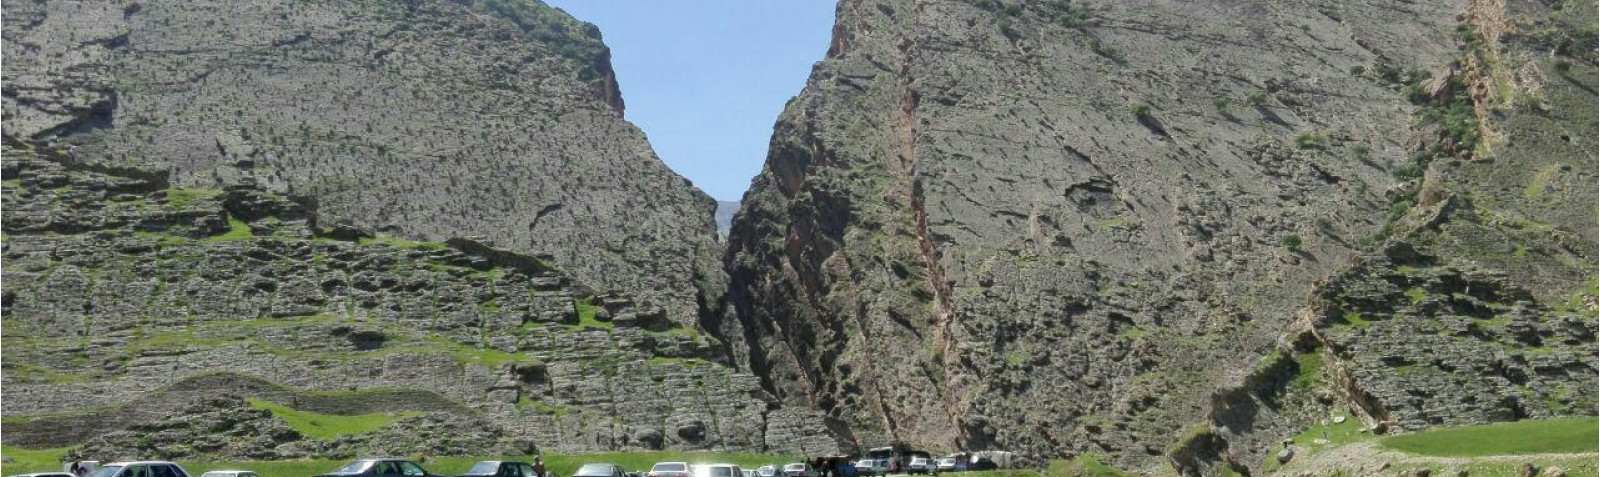 Bahram-e Choobin Gorge